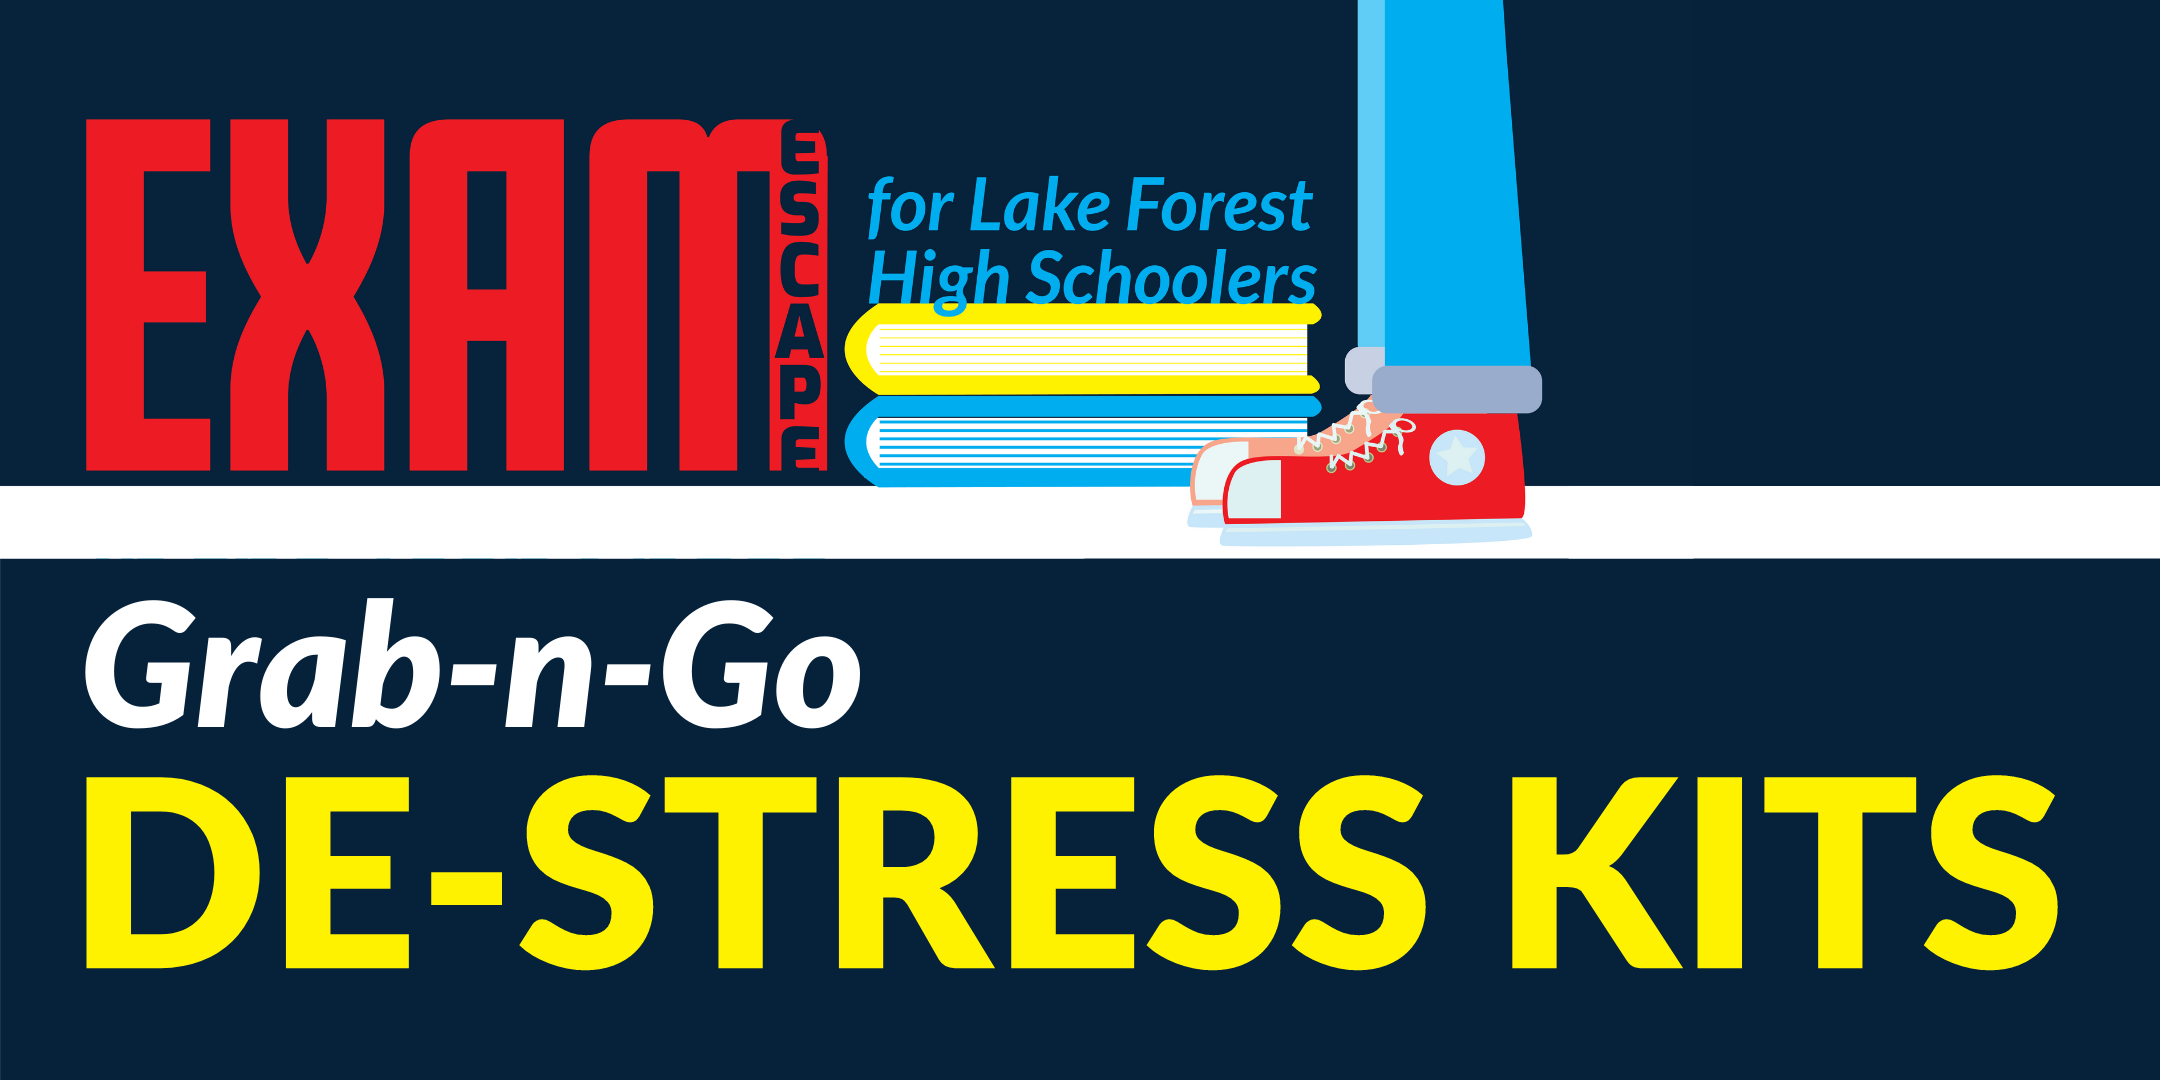 Exam De-stress Kits